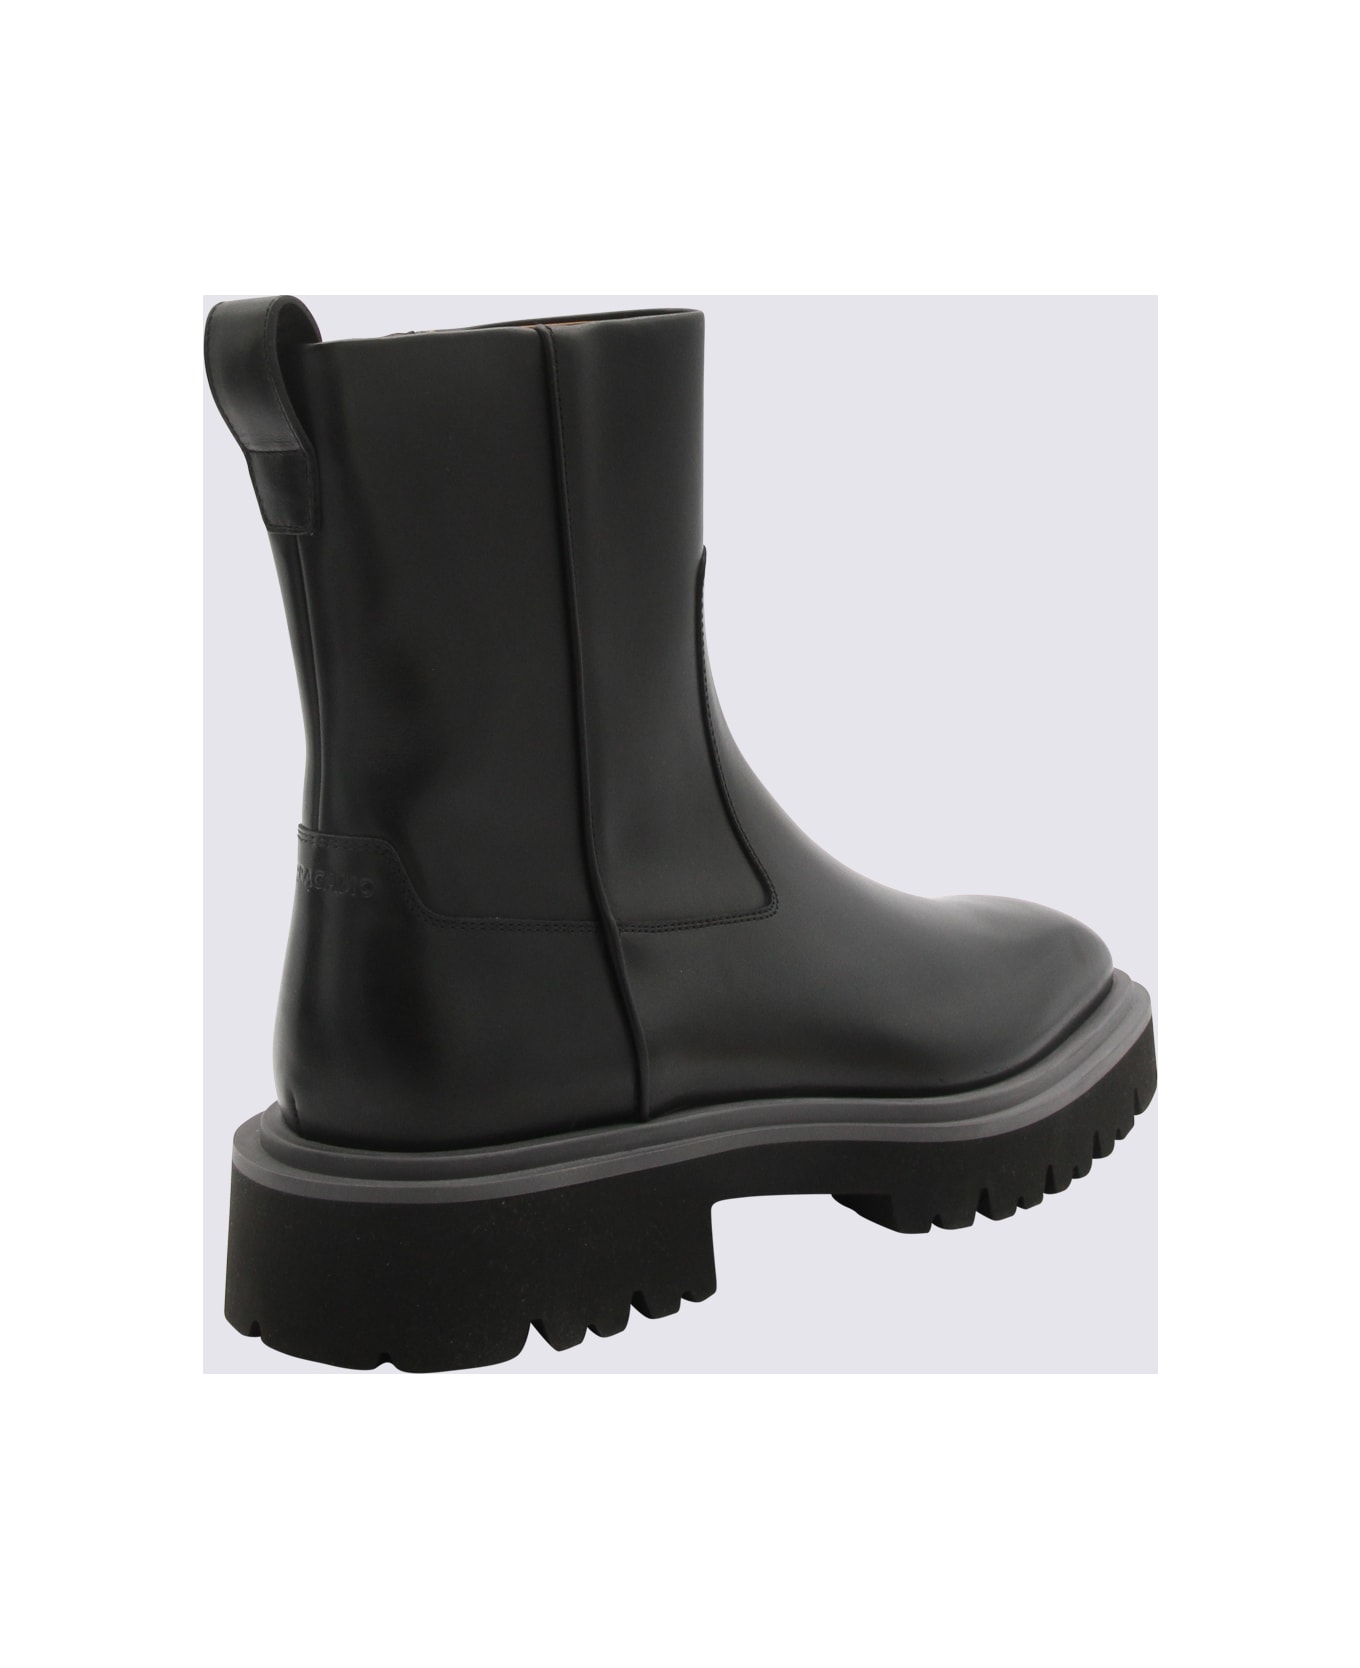 Ferragamo Black Leather Boots - NERO/NEW BISCOTTO ブーツ